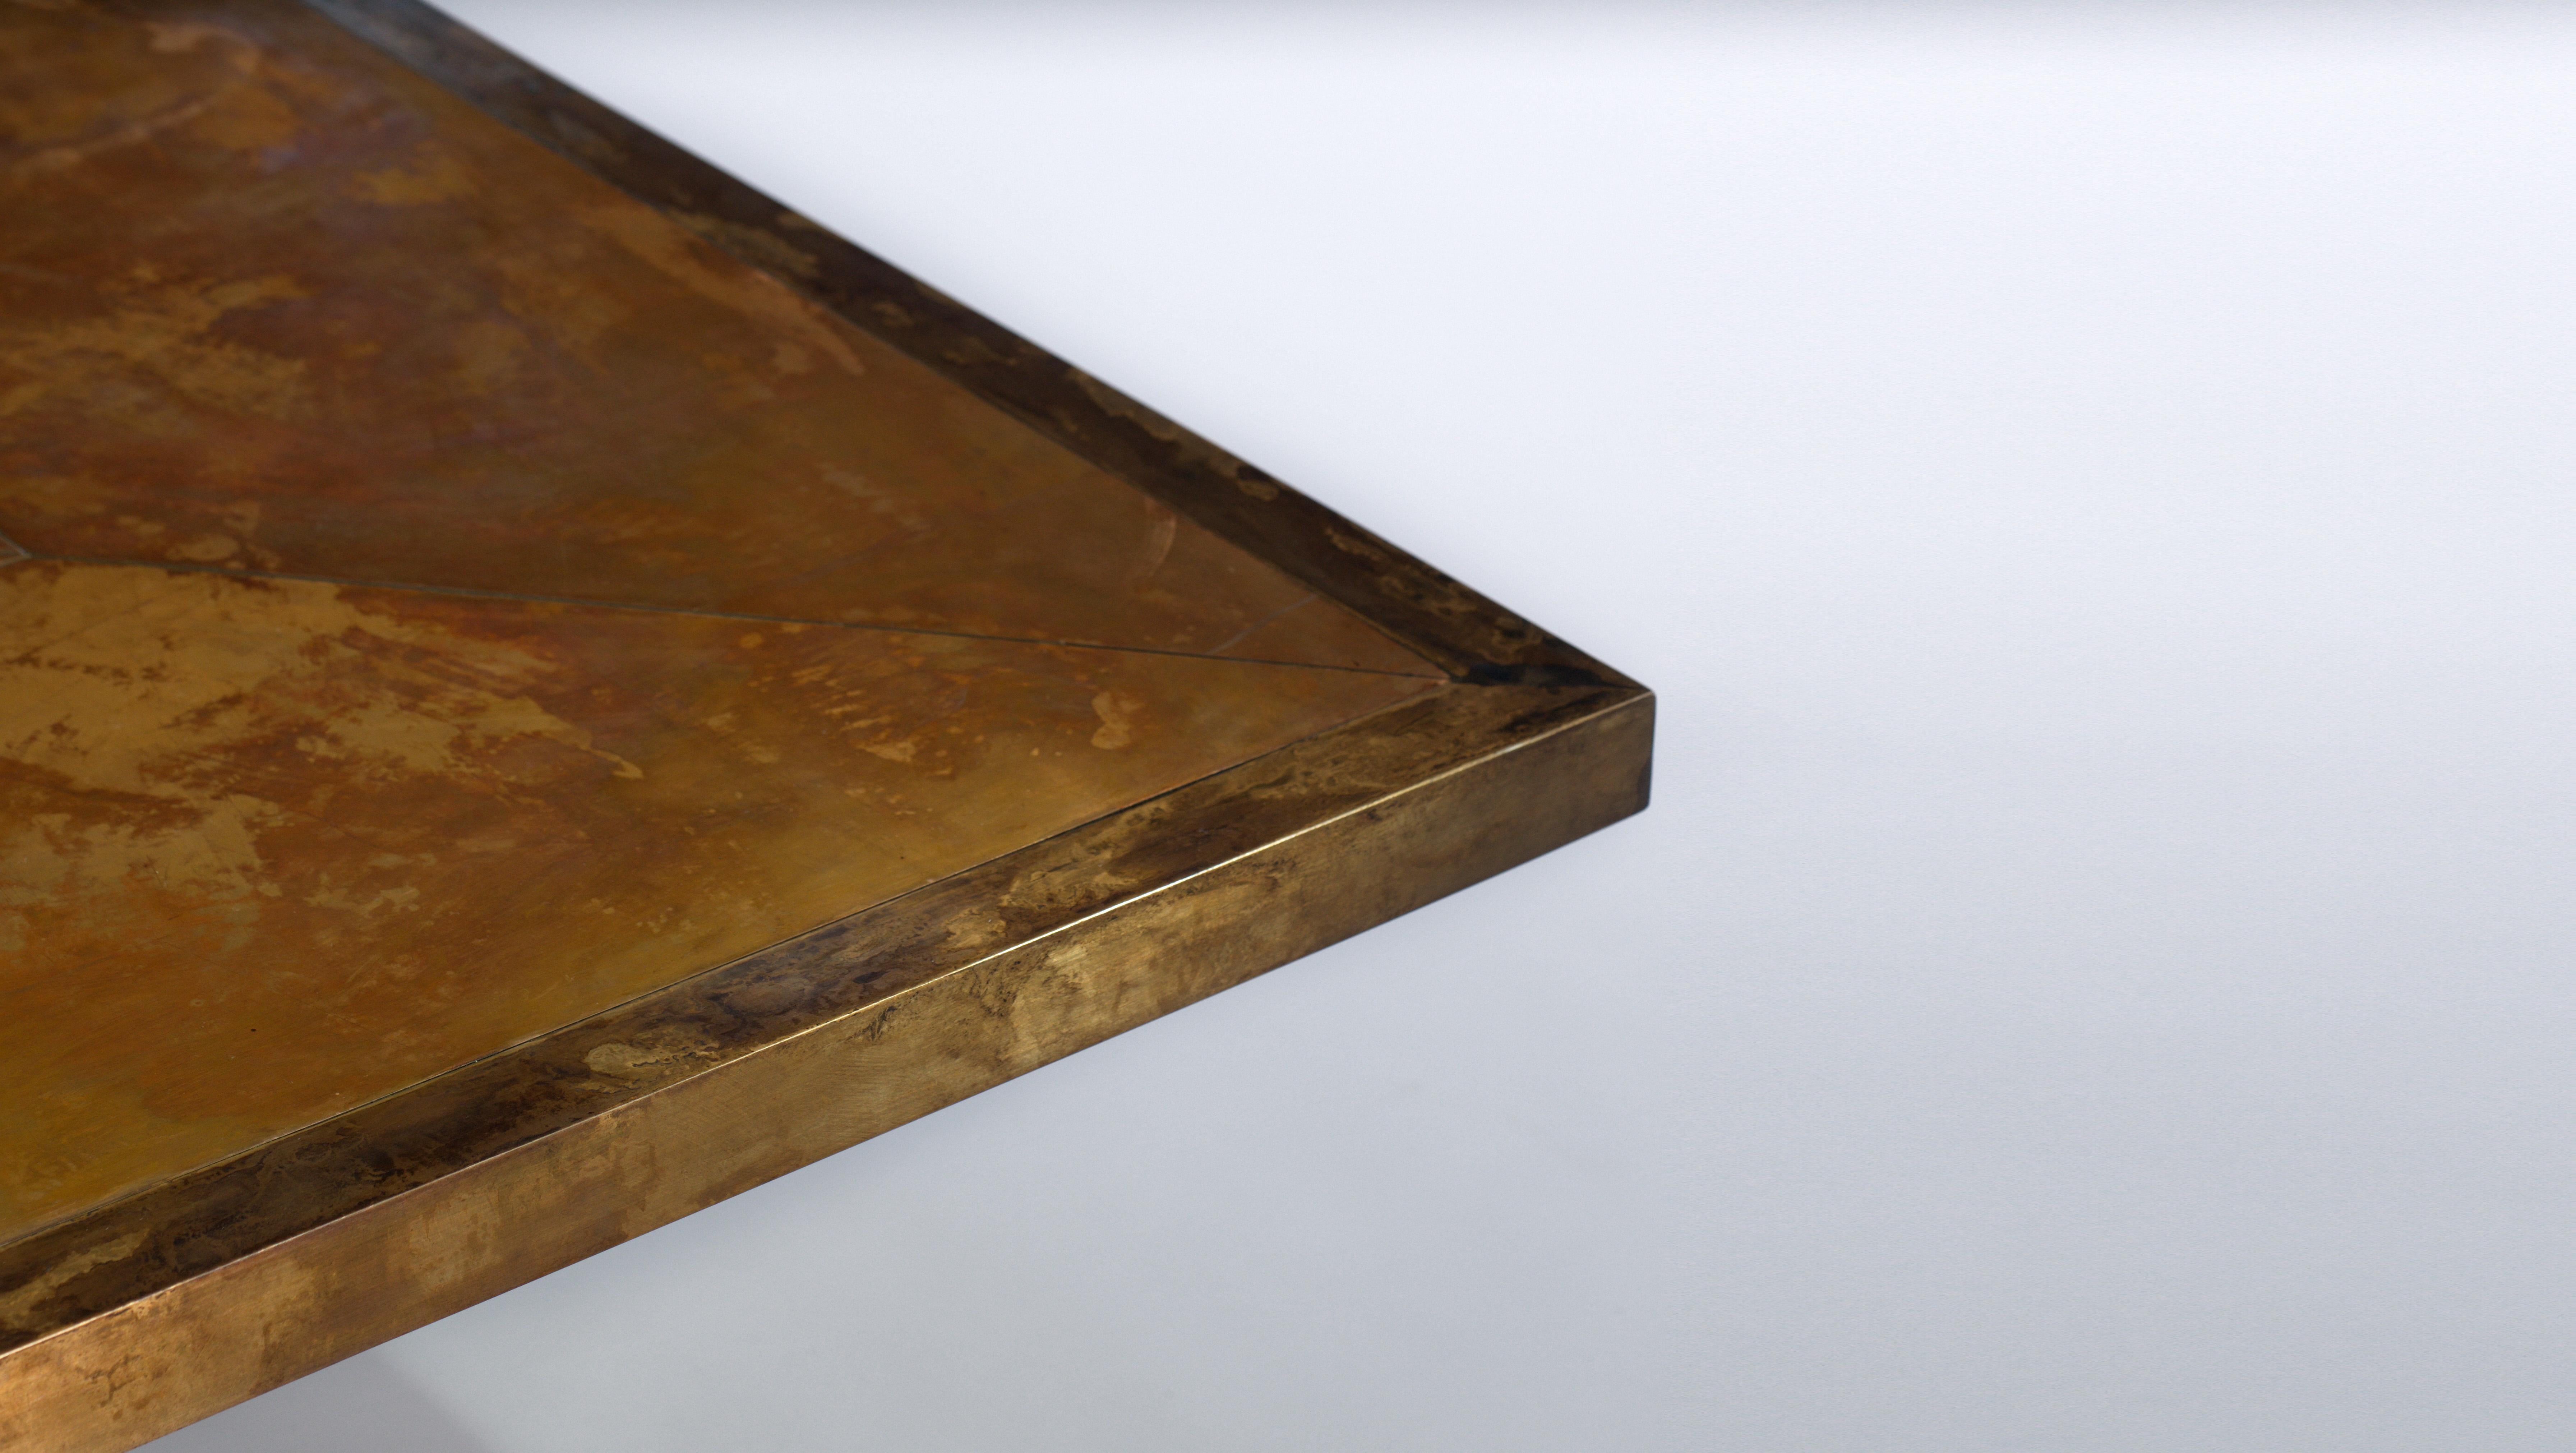 Une table basse en bronze patiné. Socle en acier avec une finition ébénisée.
Un plateau en bronze taillé en sandwich, encadré d'une bordure en laiton. La riche patine marbrée donne l'impression d'un mouvement constant.
Il peut être fait sur